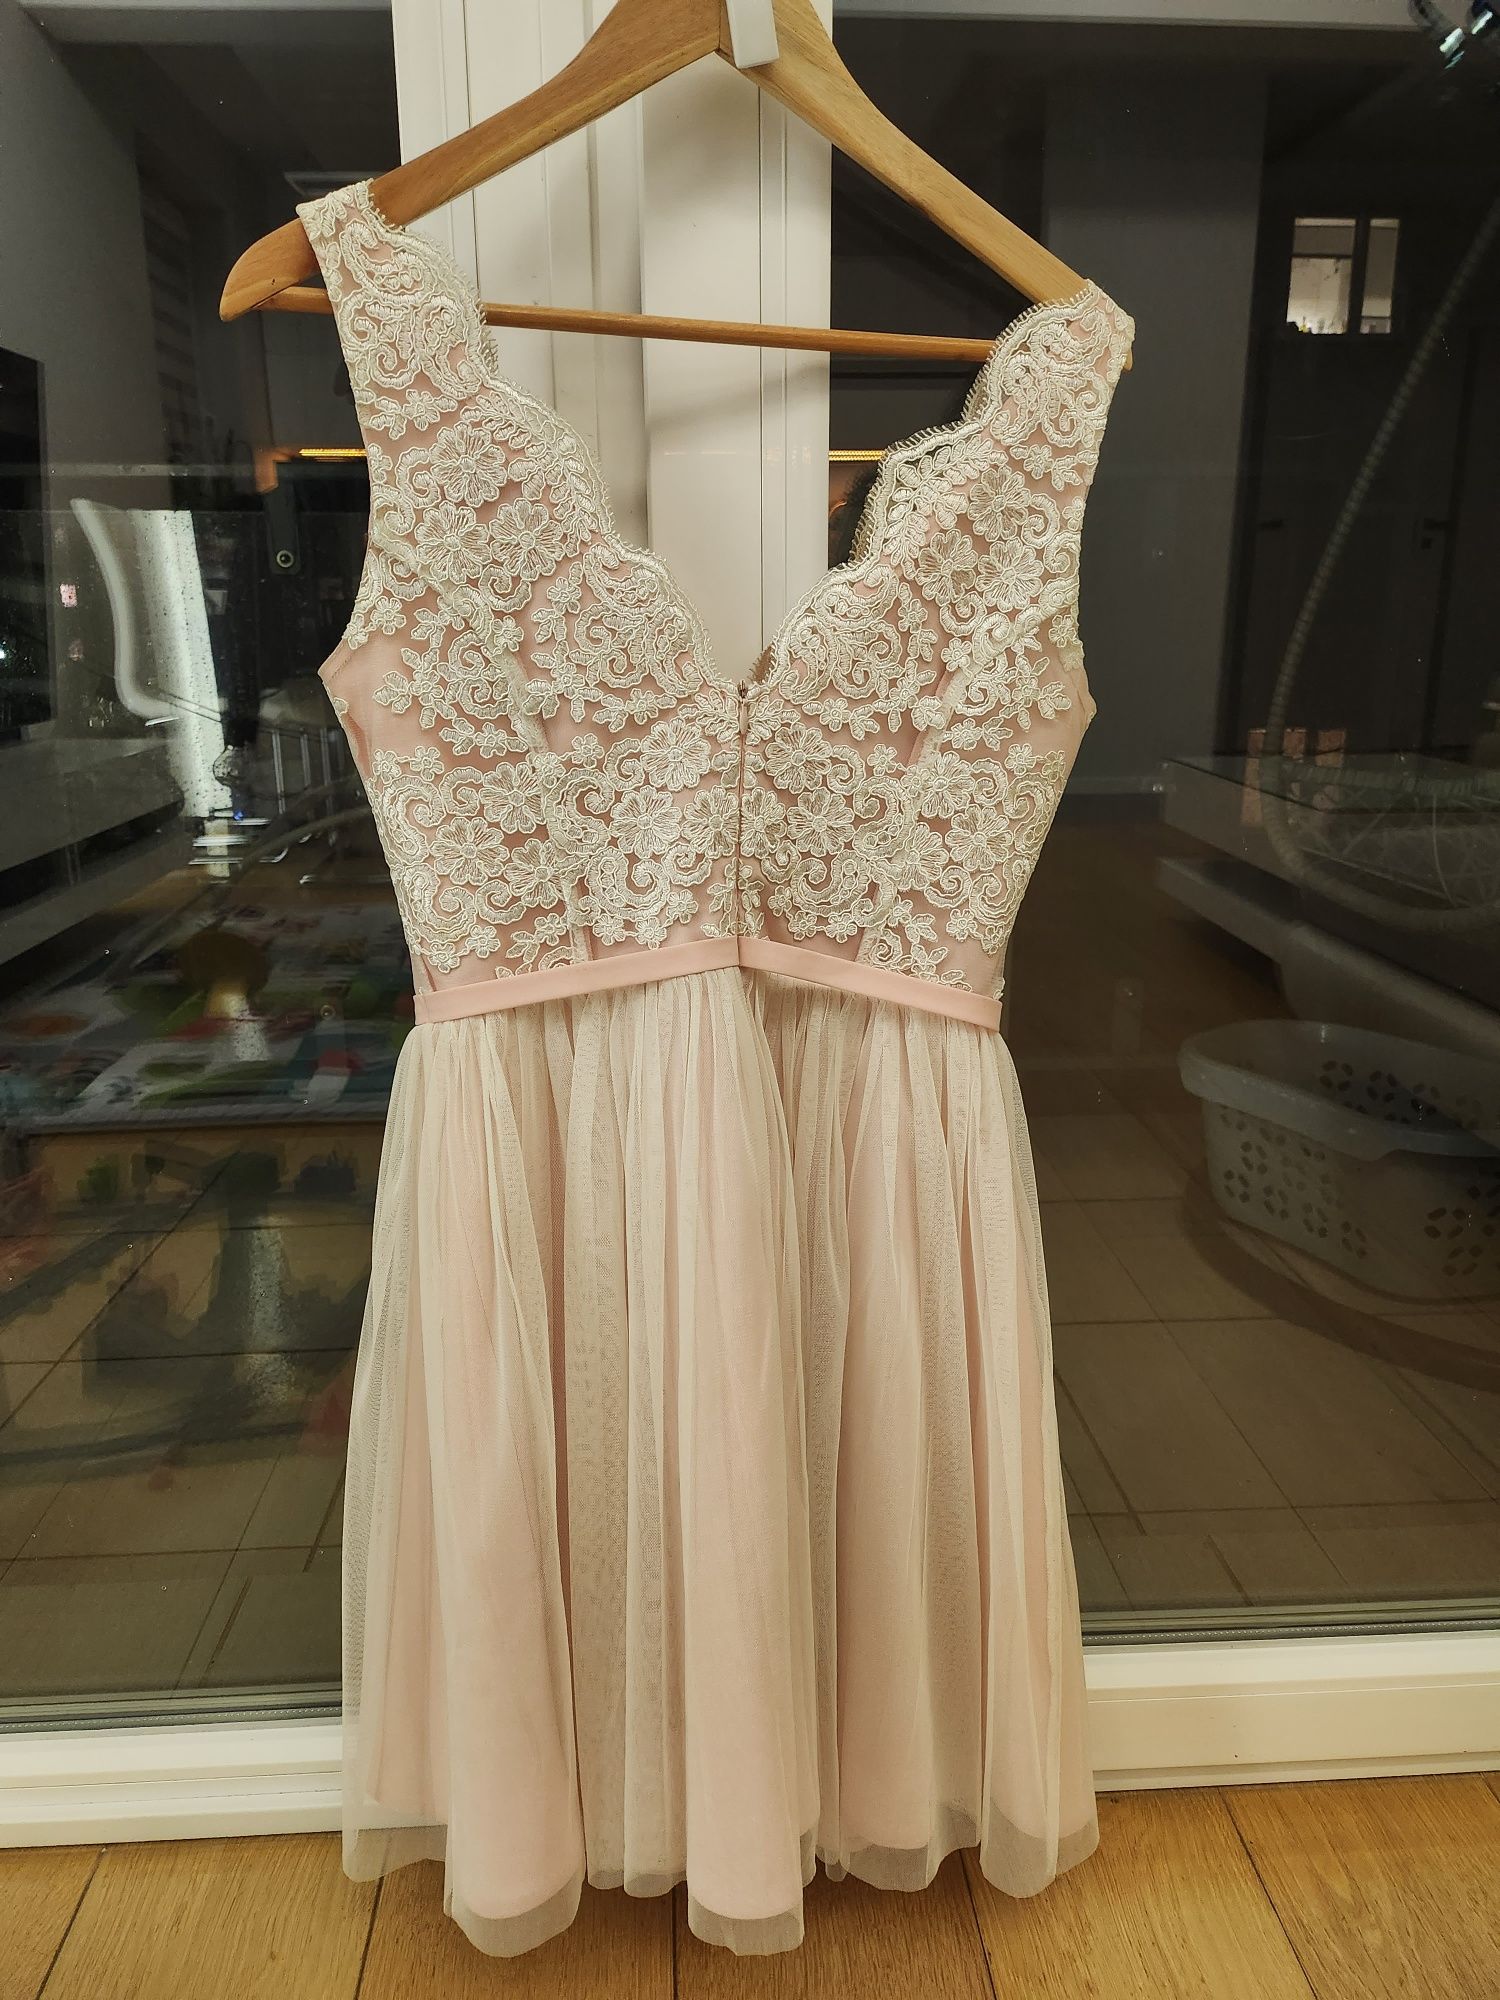 Śliczna sukienka Bicotone 2206-32, r. 38, raz ubrana